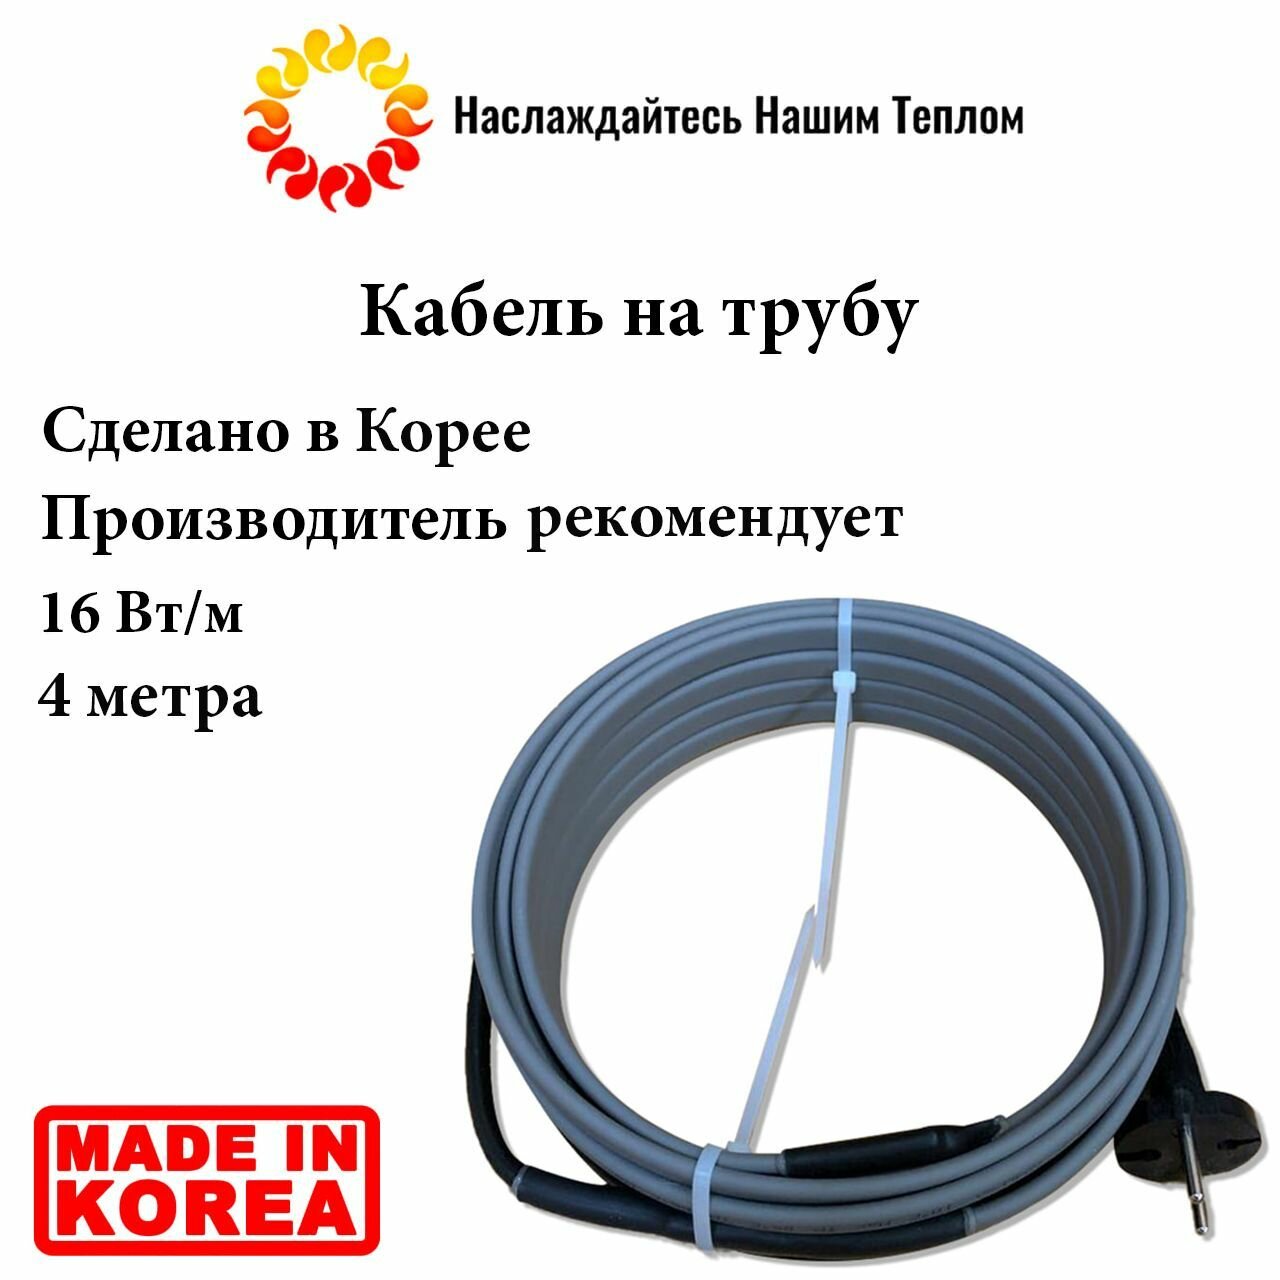 Саморегулирующийся наружный кабель на трубу 16 Вт/м, 4 метра, произведено в Южной Корее